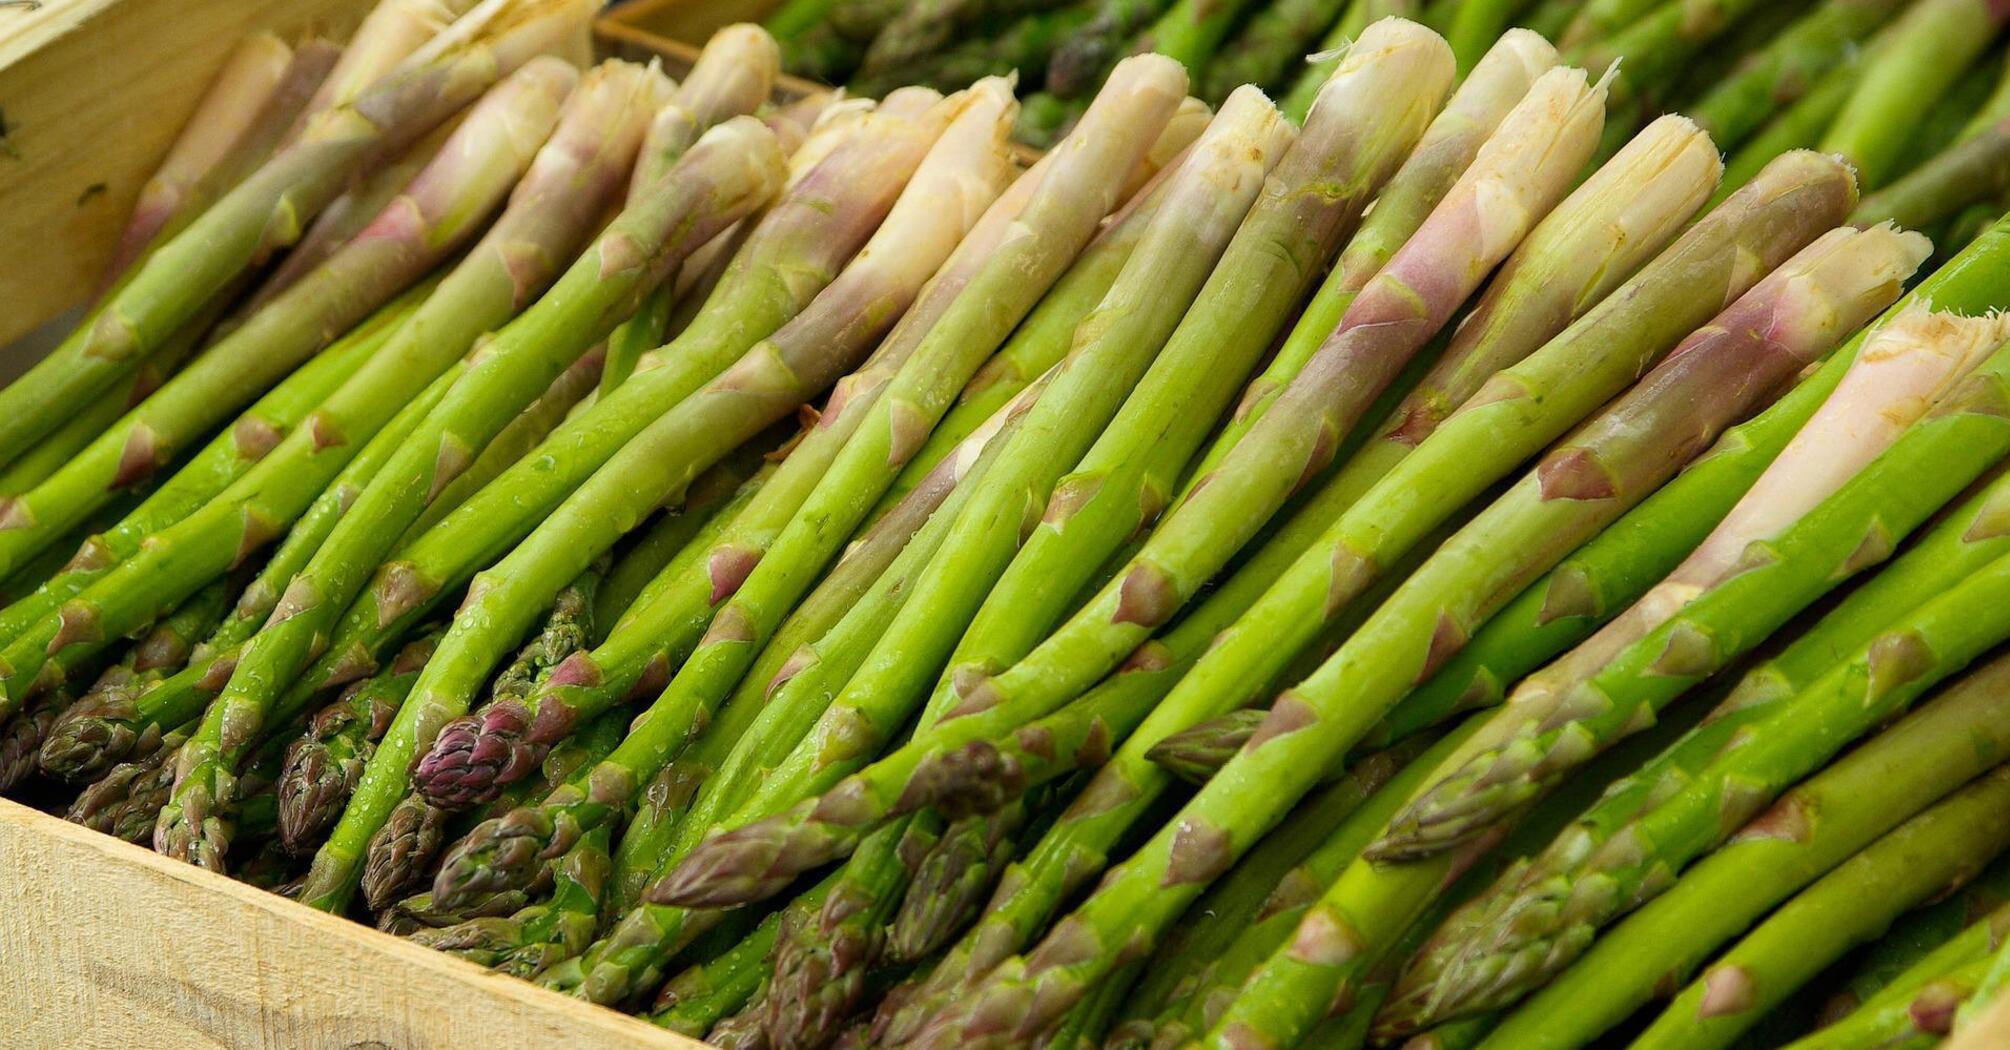 Tasty and healthy asparagus